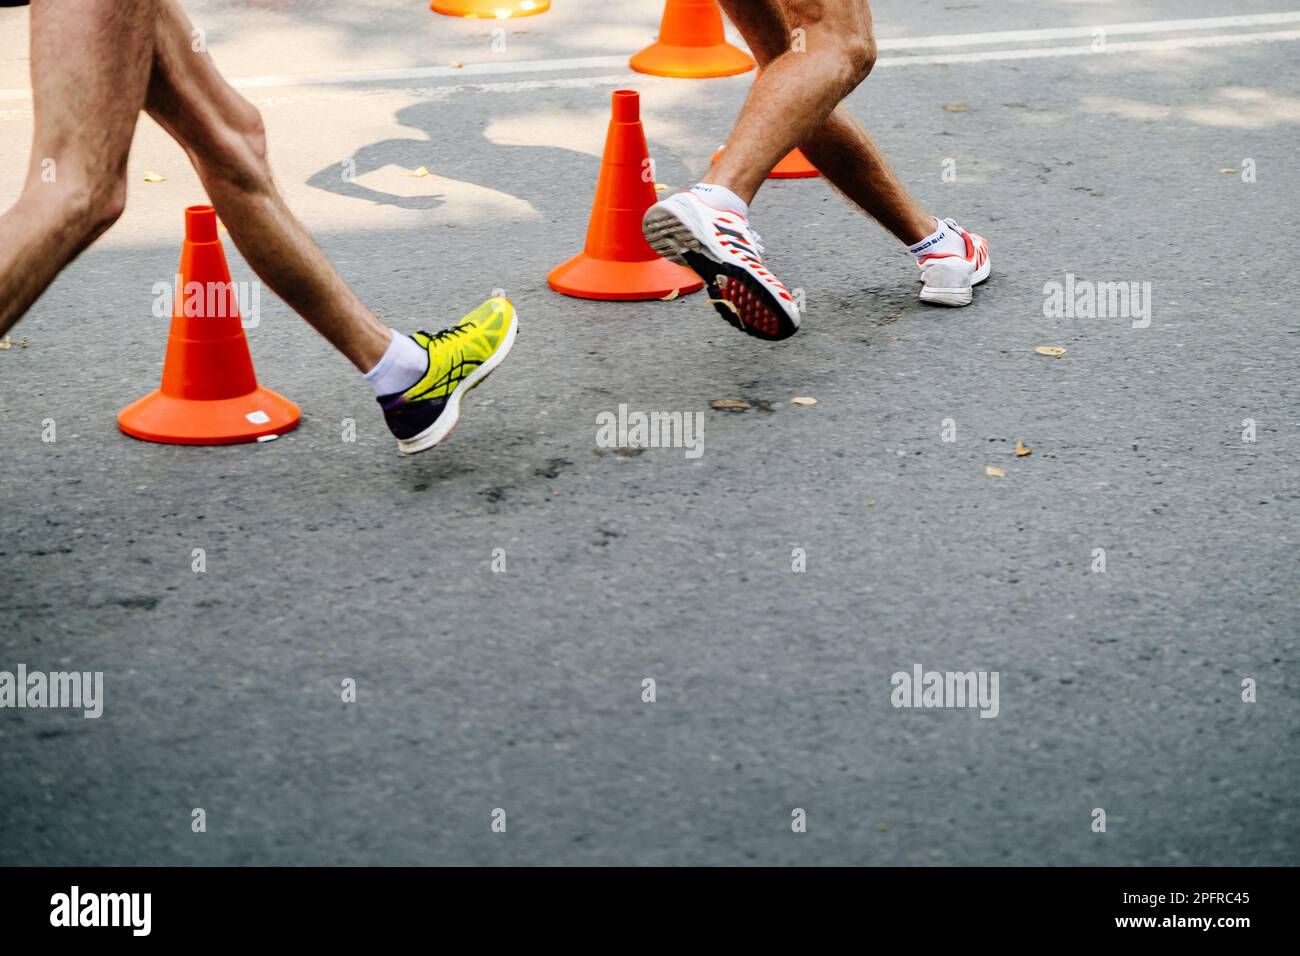 Jambes athlète masculin en compétition de course, chaussures de sport pour la marche Adidas et Asics Banque D'Images